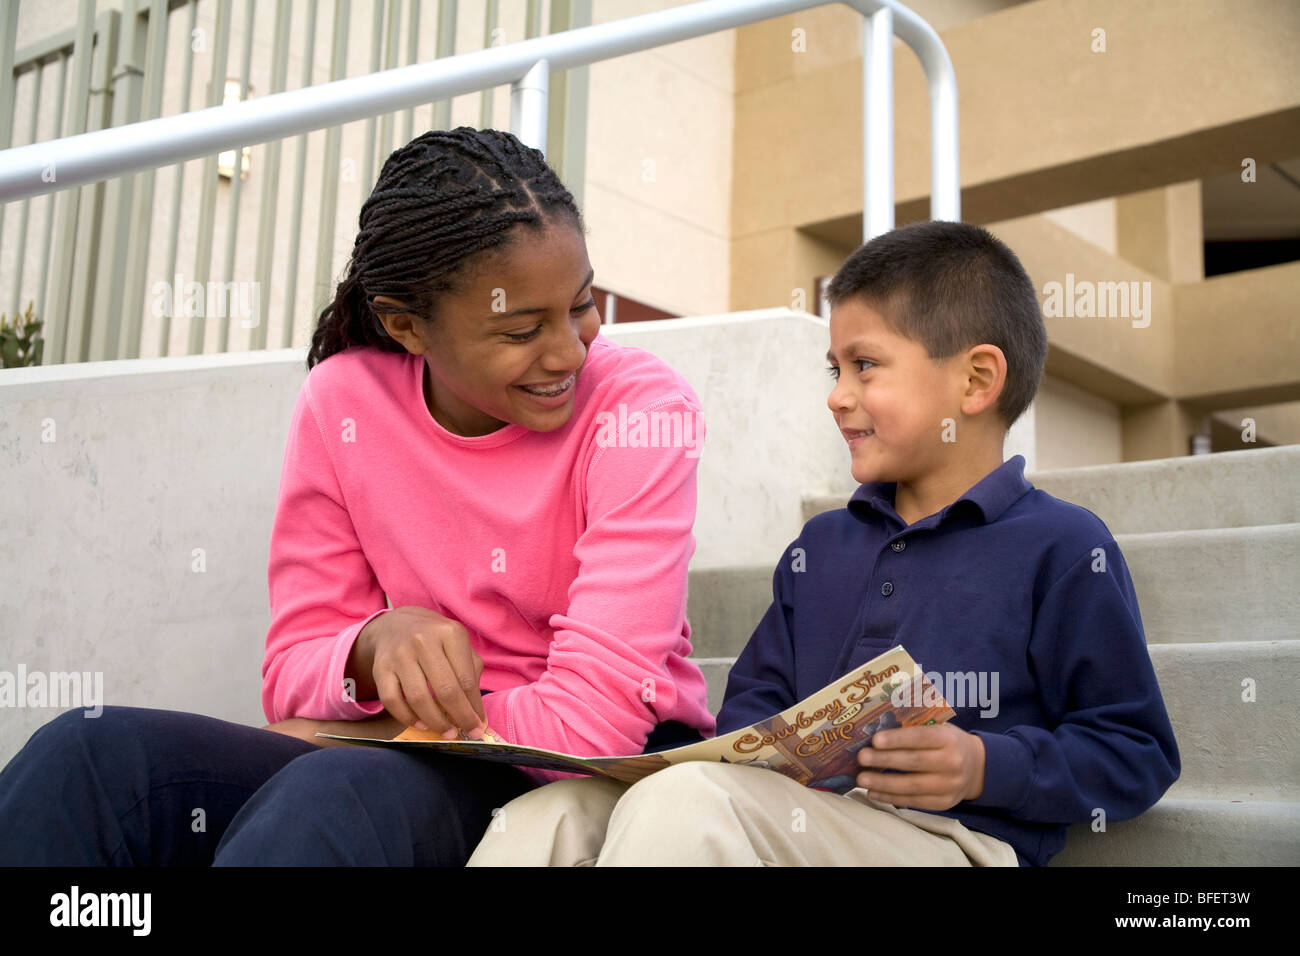 Ältere Teenager-Mädchen liest ein Buch spricht Lächeln Lächeln Förderung ermutigt junge 5-6 Jahre alten USA Herr © Myrleen Pearson Stockfoto